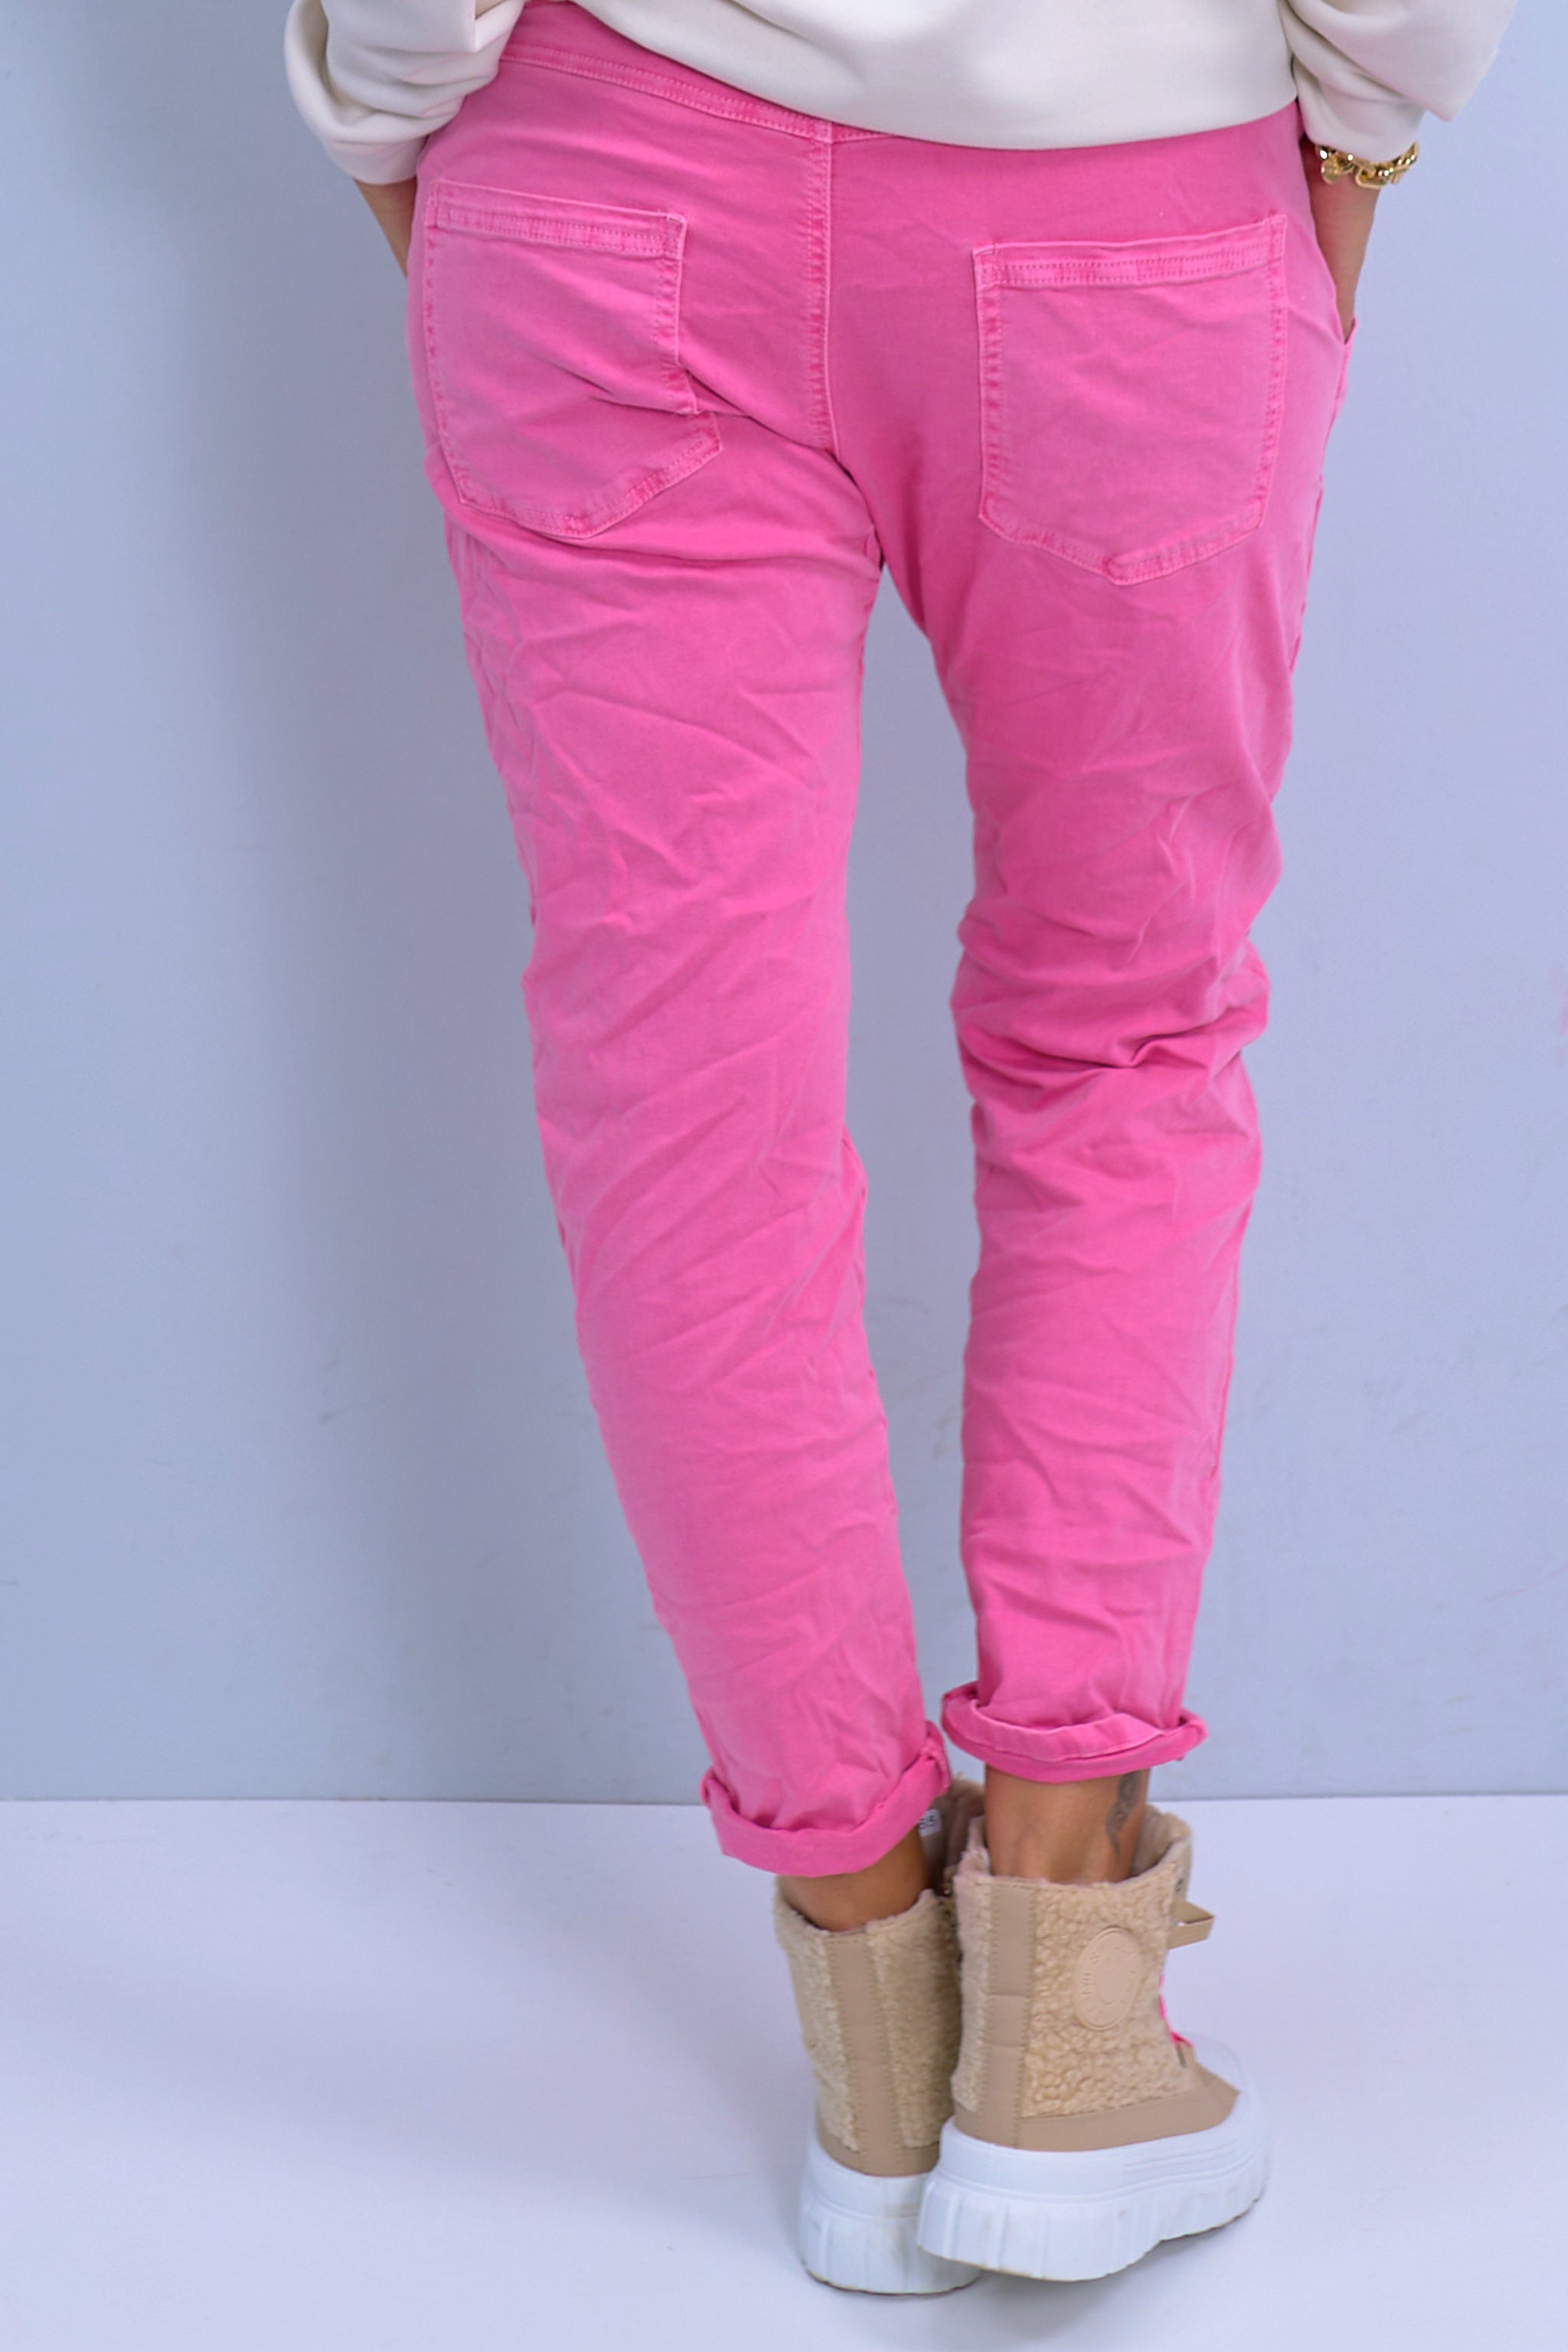 Jeans-Stretch-Hose mit aufgesetzten Taschen, pink